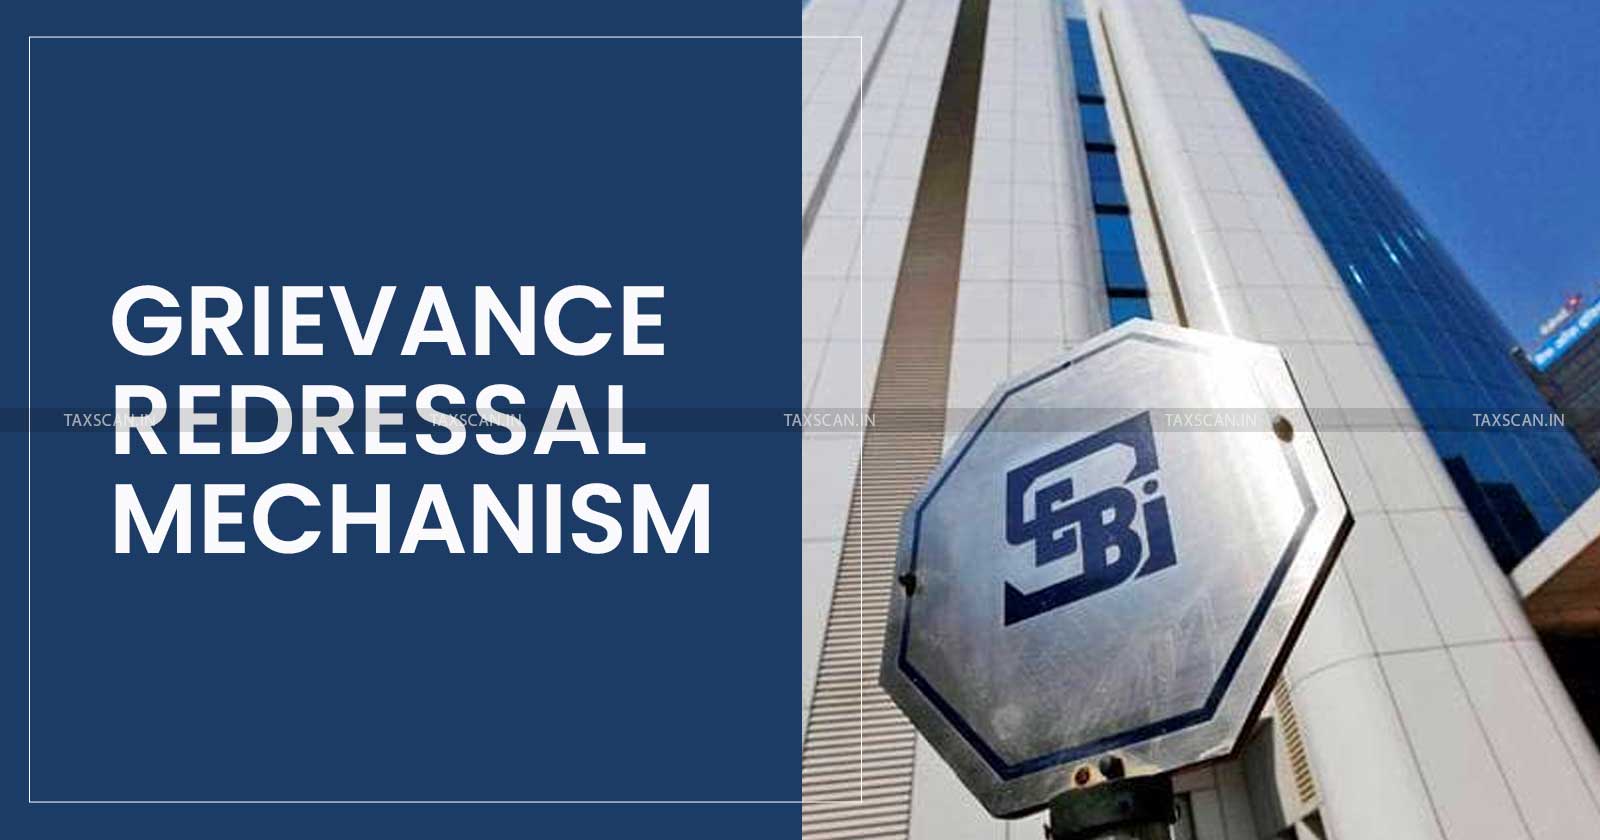 SEBI introduces Grievance Redressal Mechanism - SEBI - Grievance Redressal Mechanism - Regulations - Notifies SEBI - Facilitation of Grievance Redressal Mechanism - Taxscan